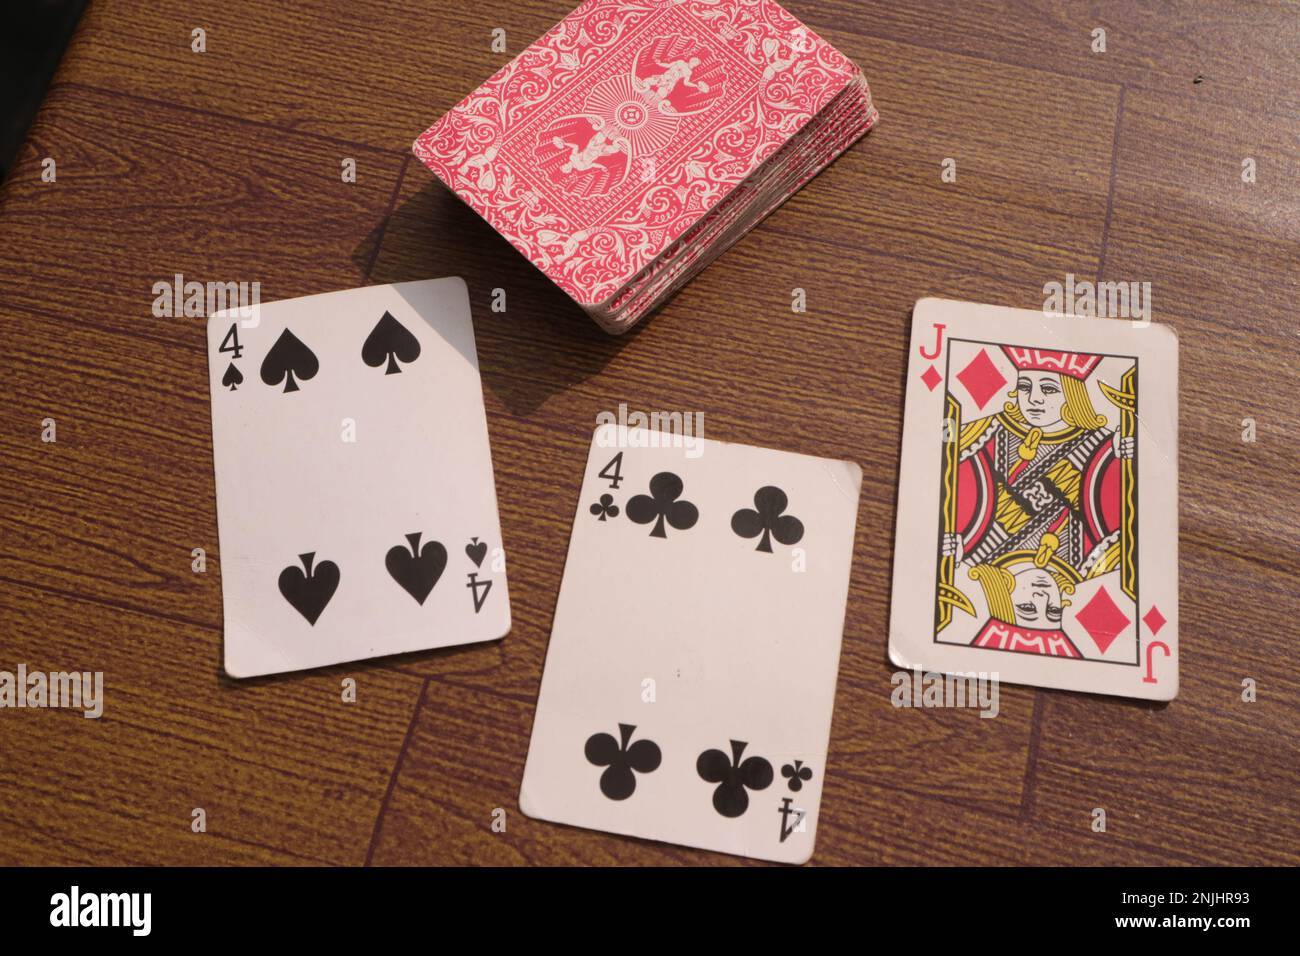 Pile de cartes de poker sur table en bois Banque D'Images